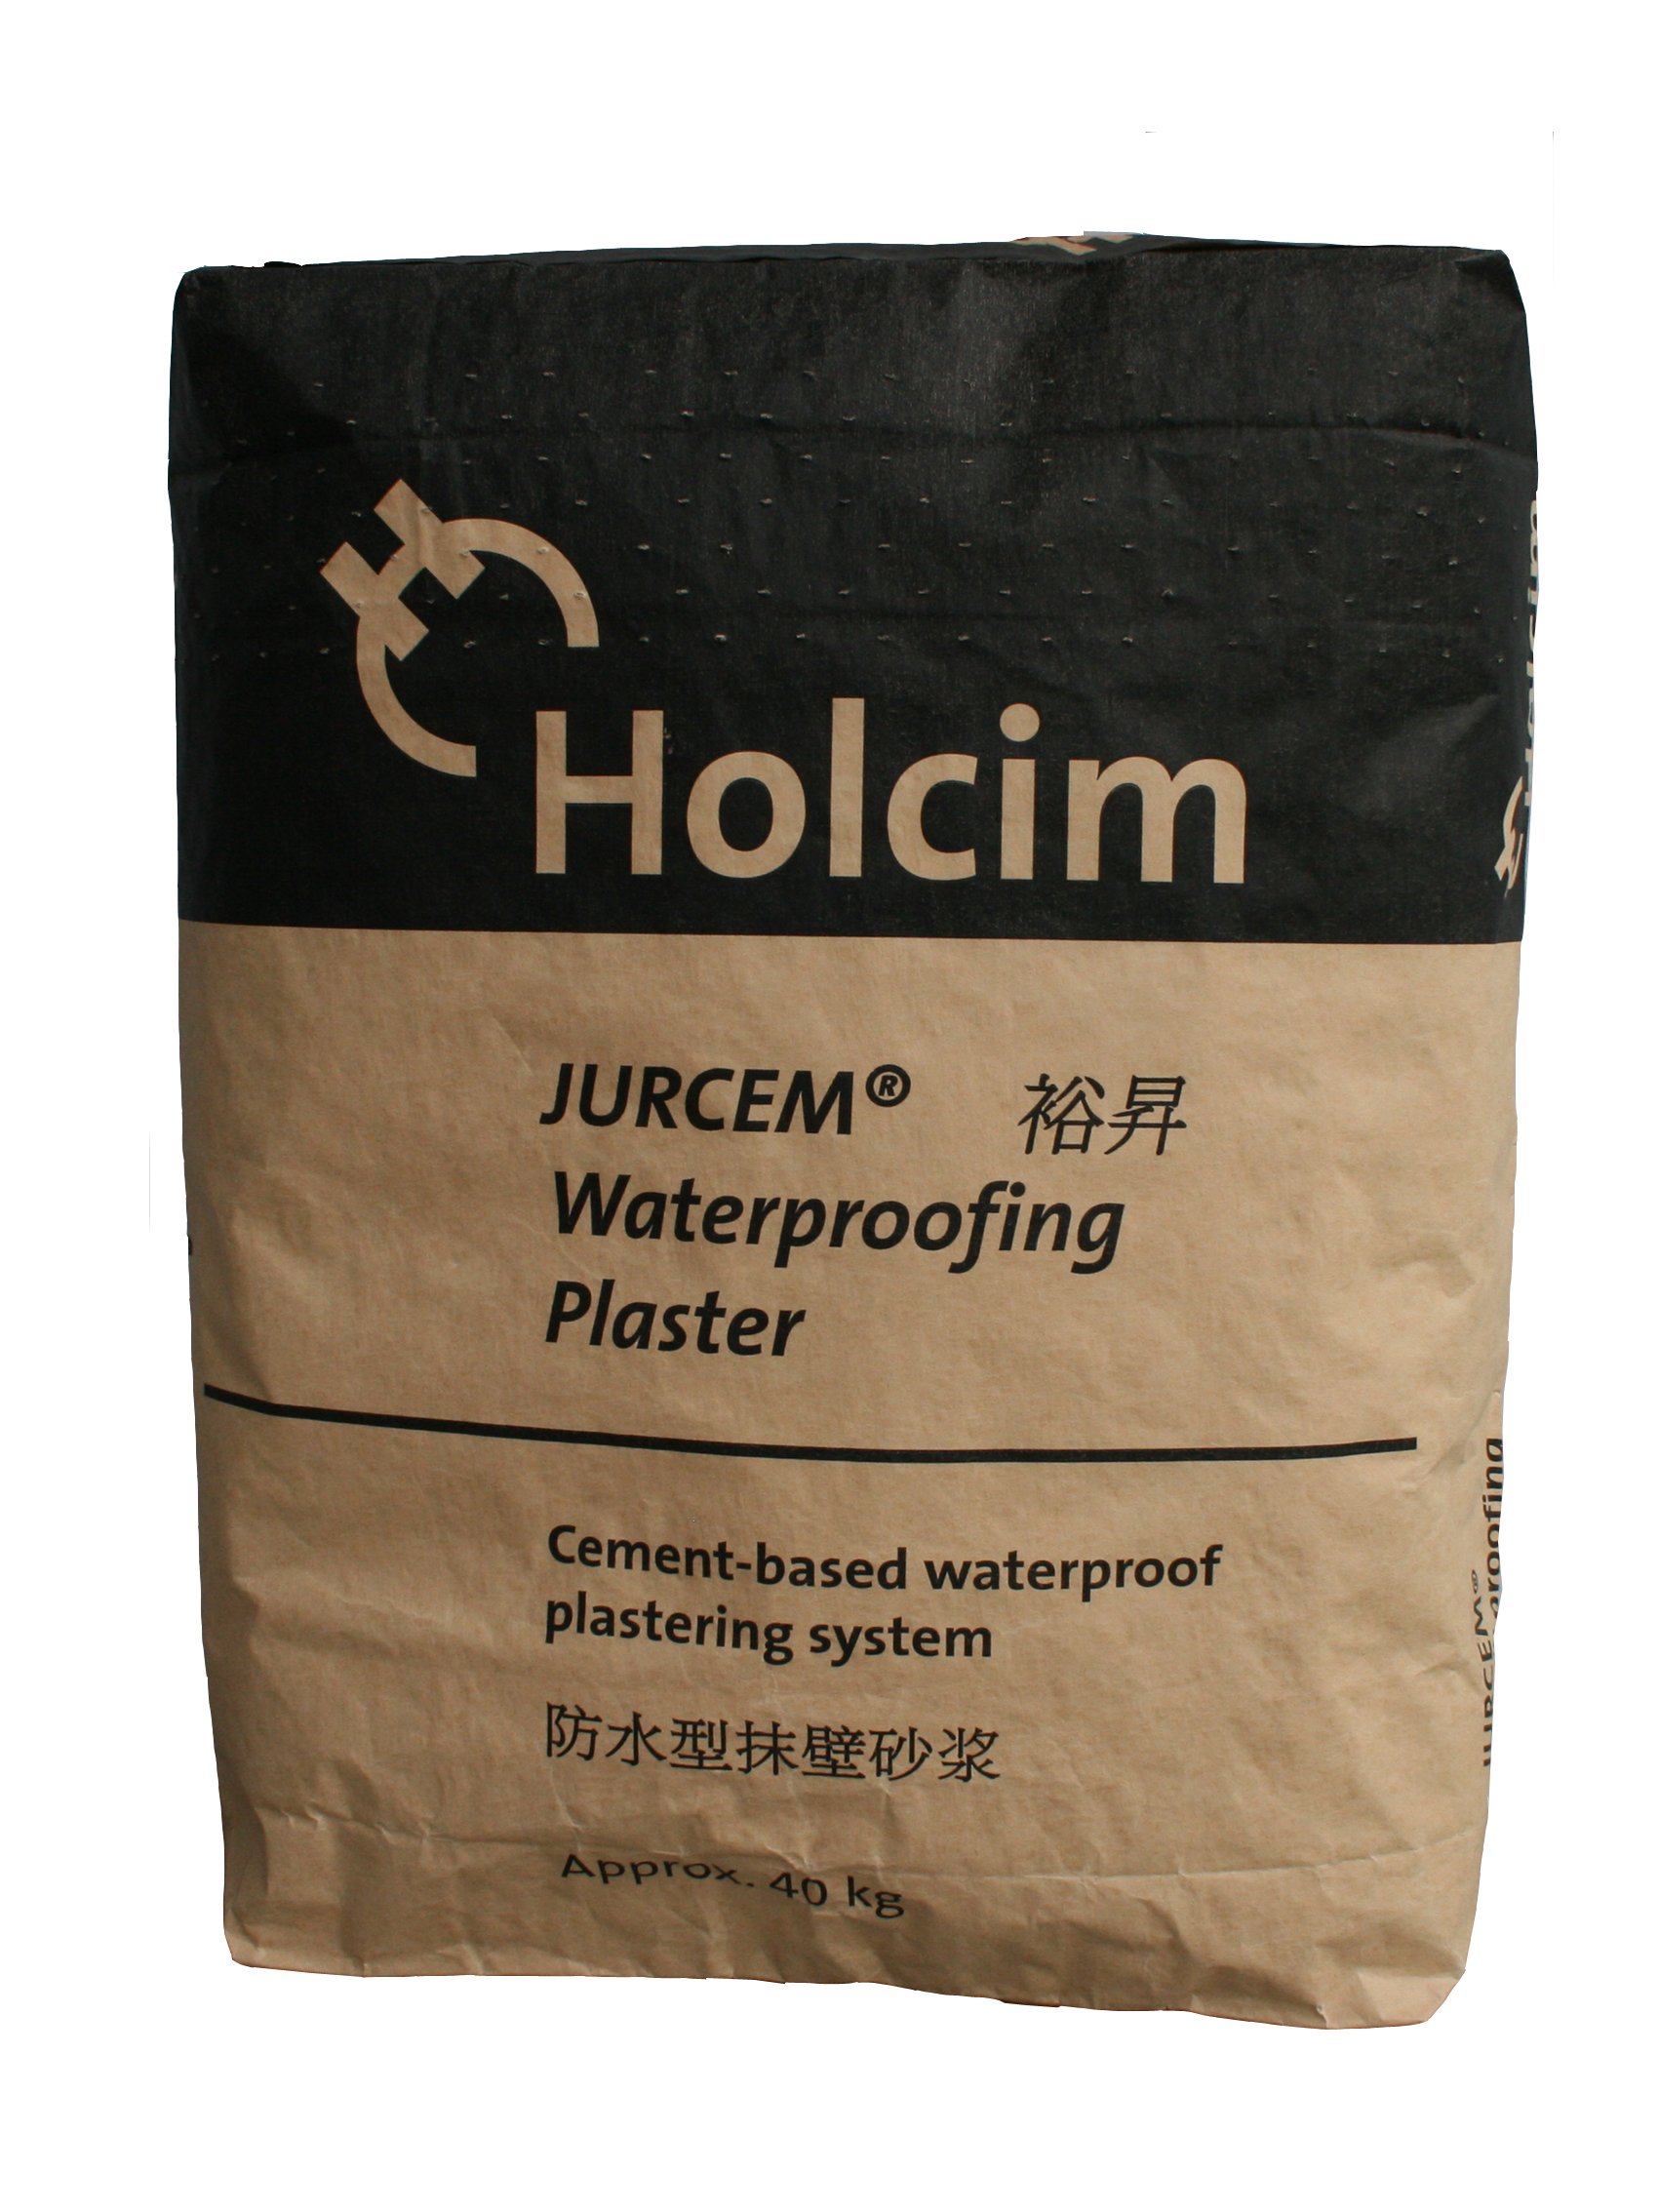 Jurcem Waterproofing Plaster Acelink